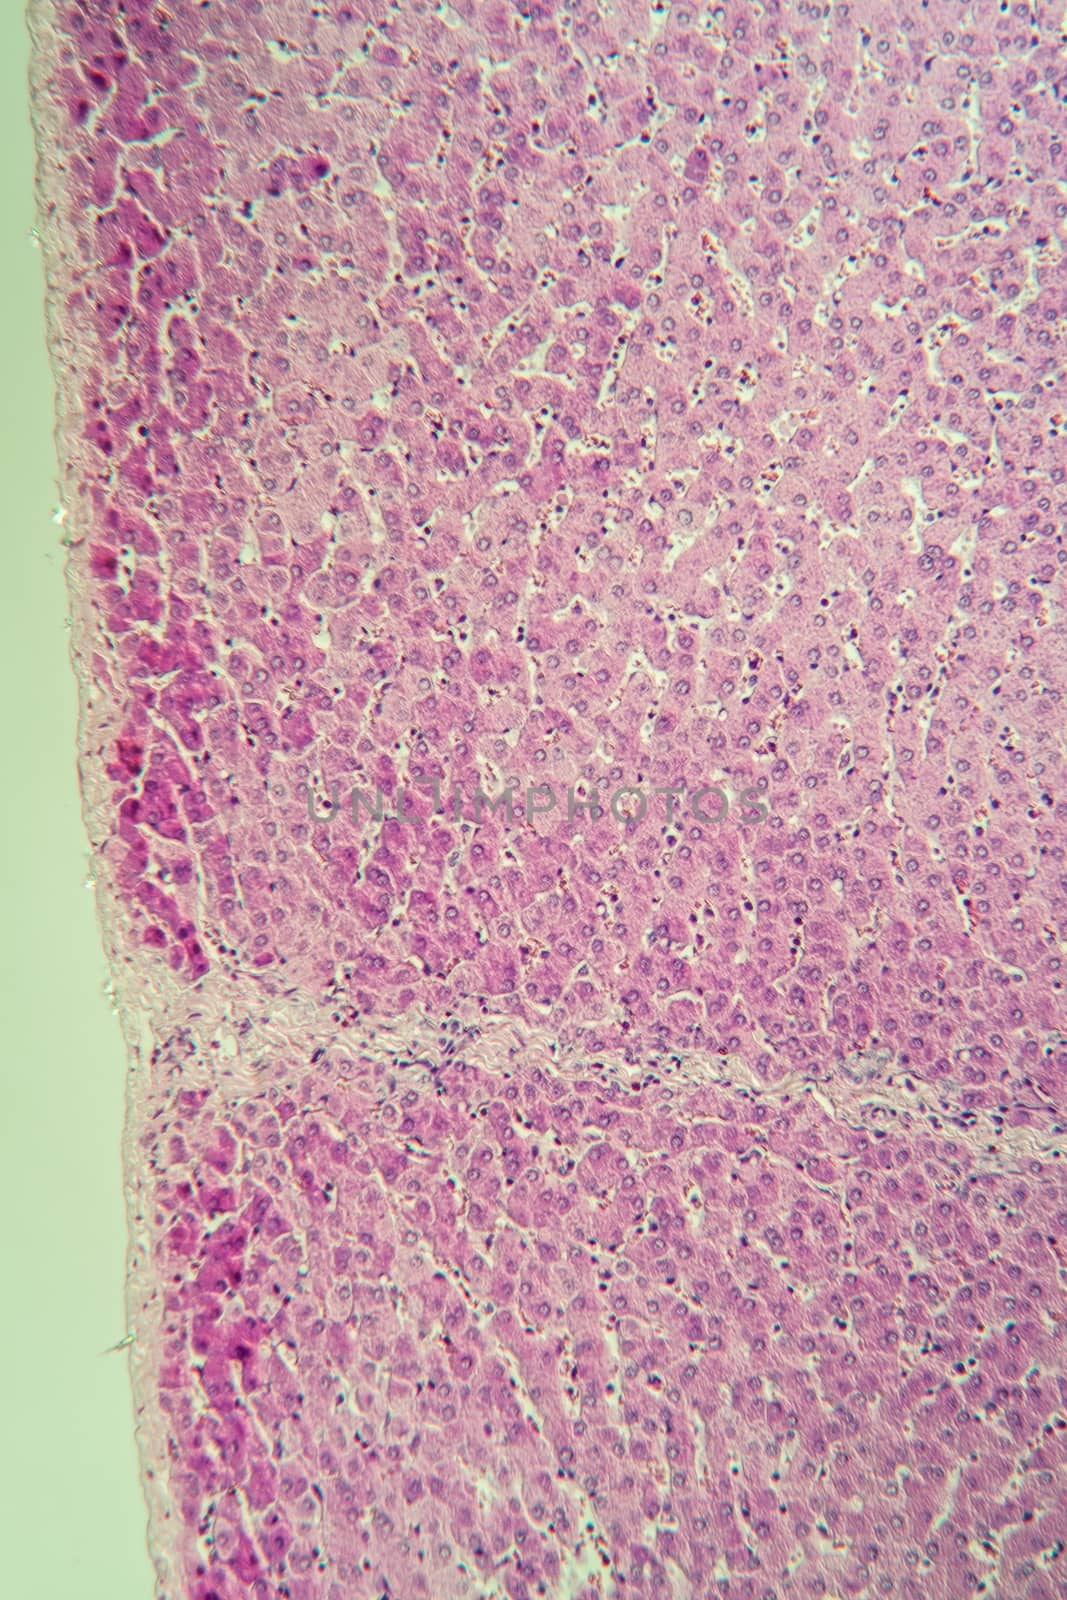 Pork liver tissue cut 100x